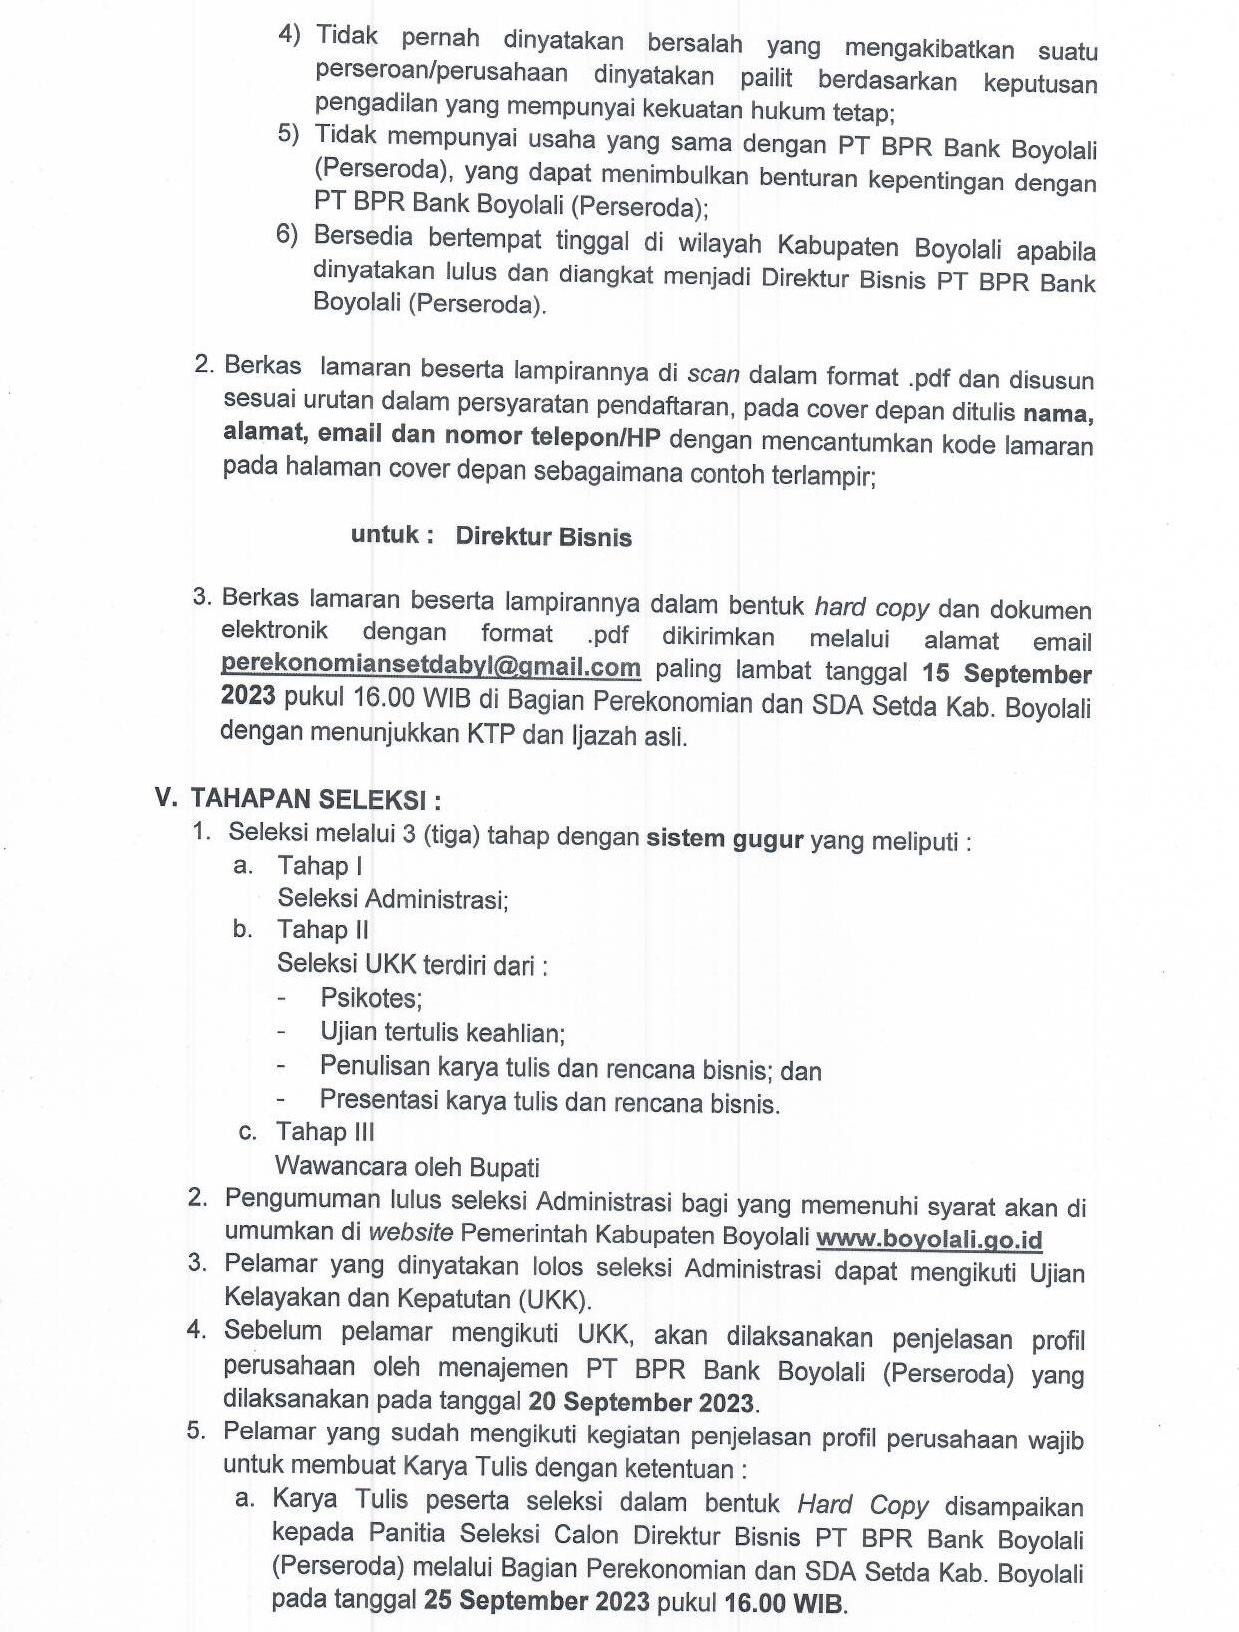 Pengumuman seleksi Direktur Bisnis PT BPR Bank Boyolali th 2023 Page 3